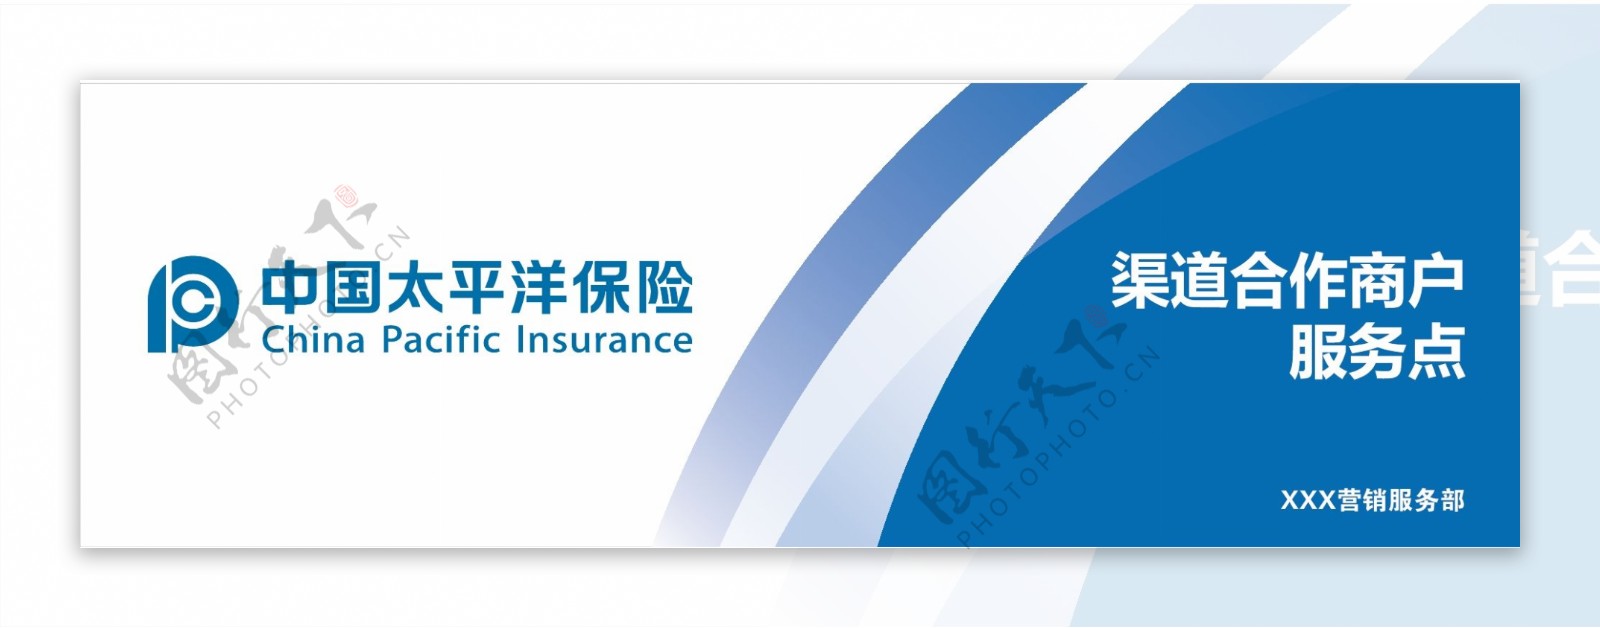 中国太平洋保险招牌